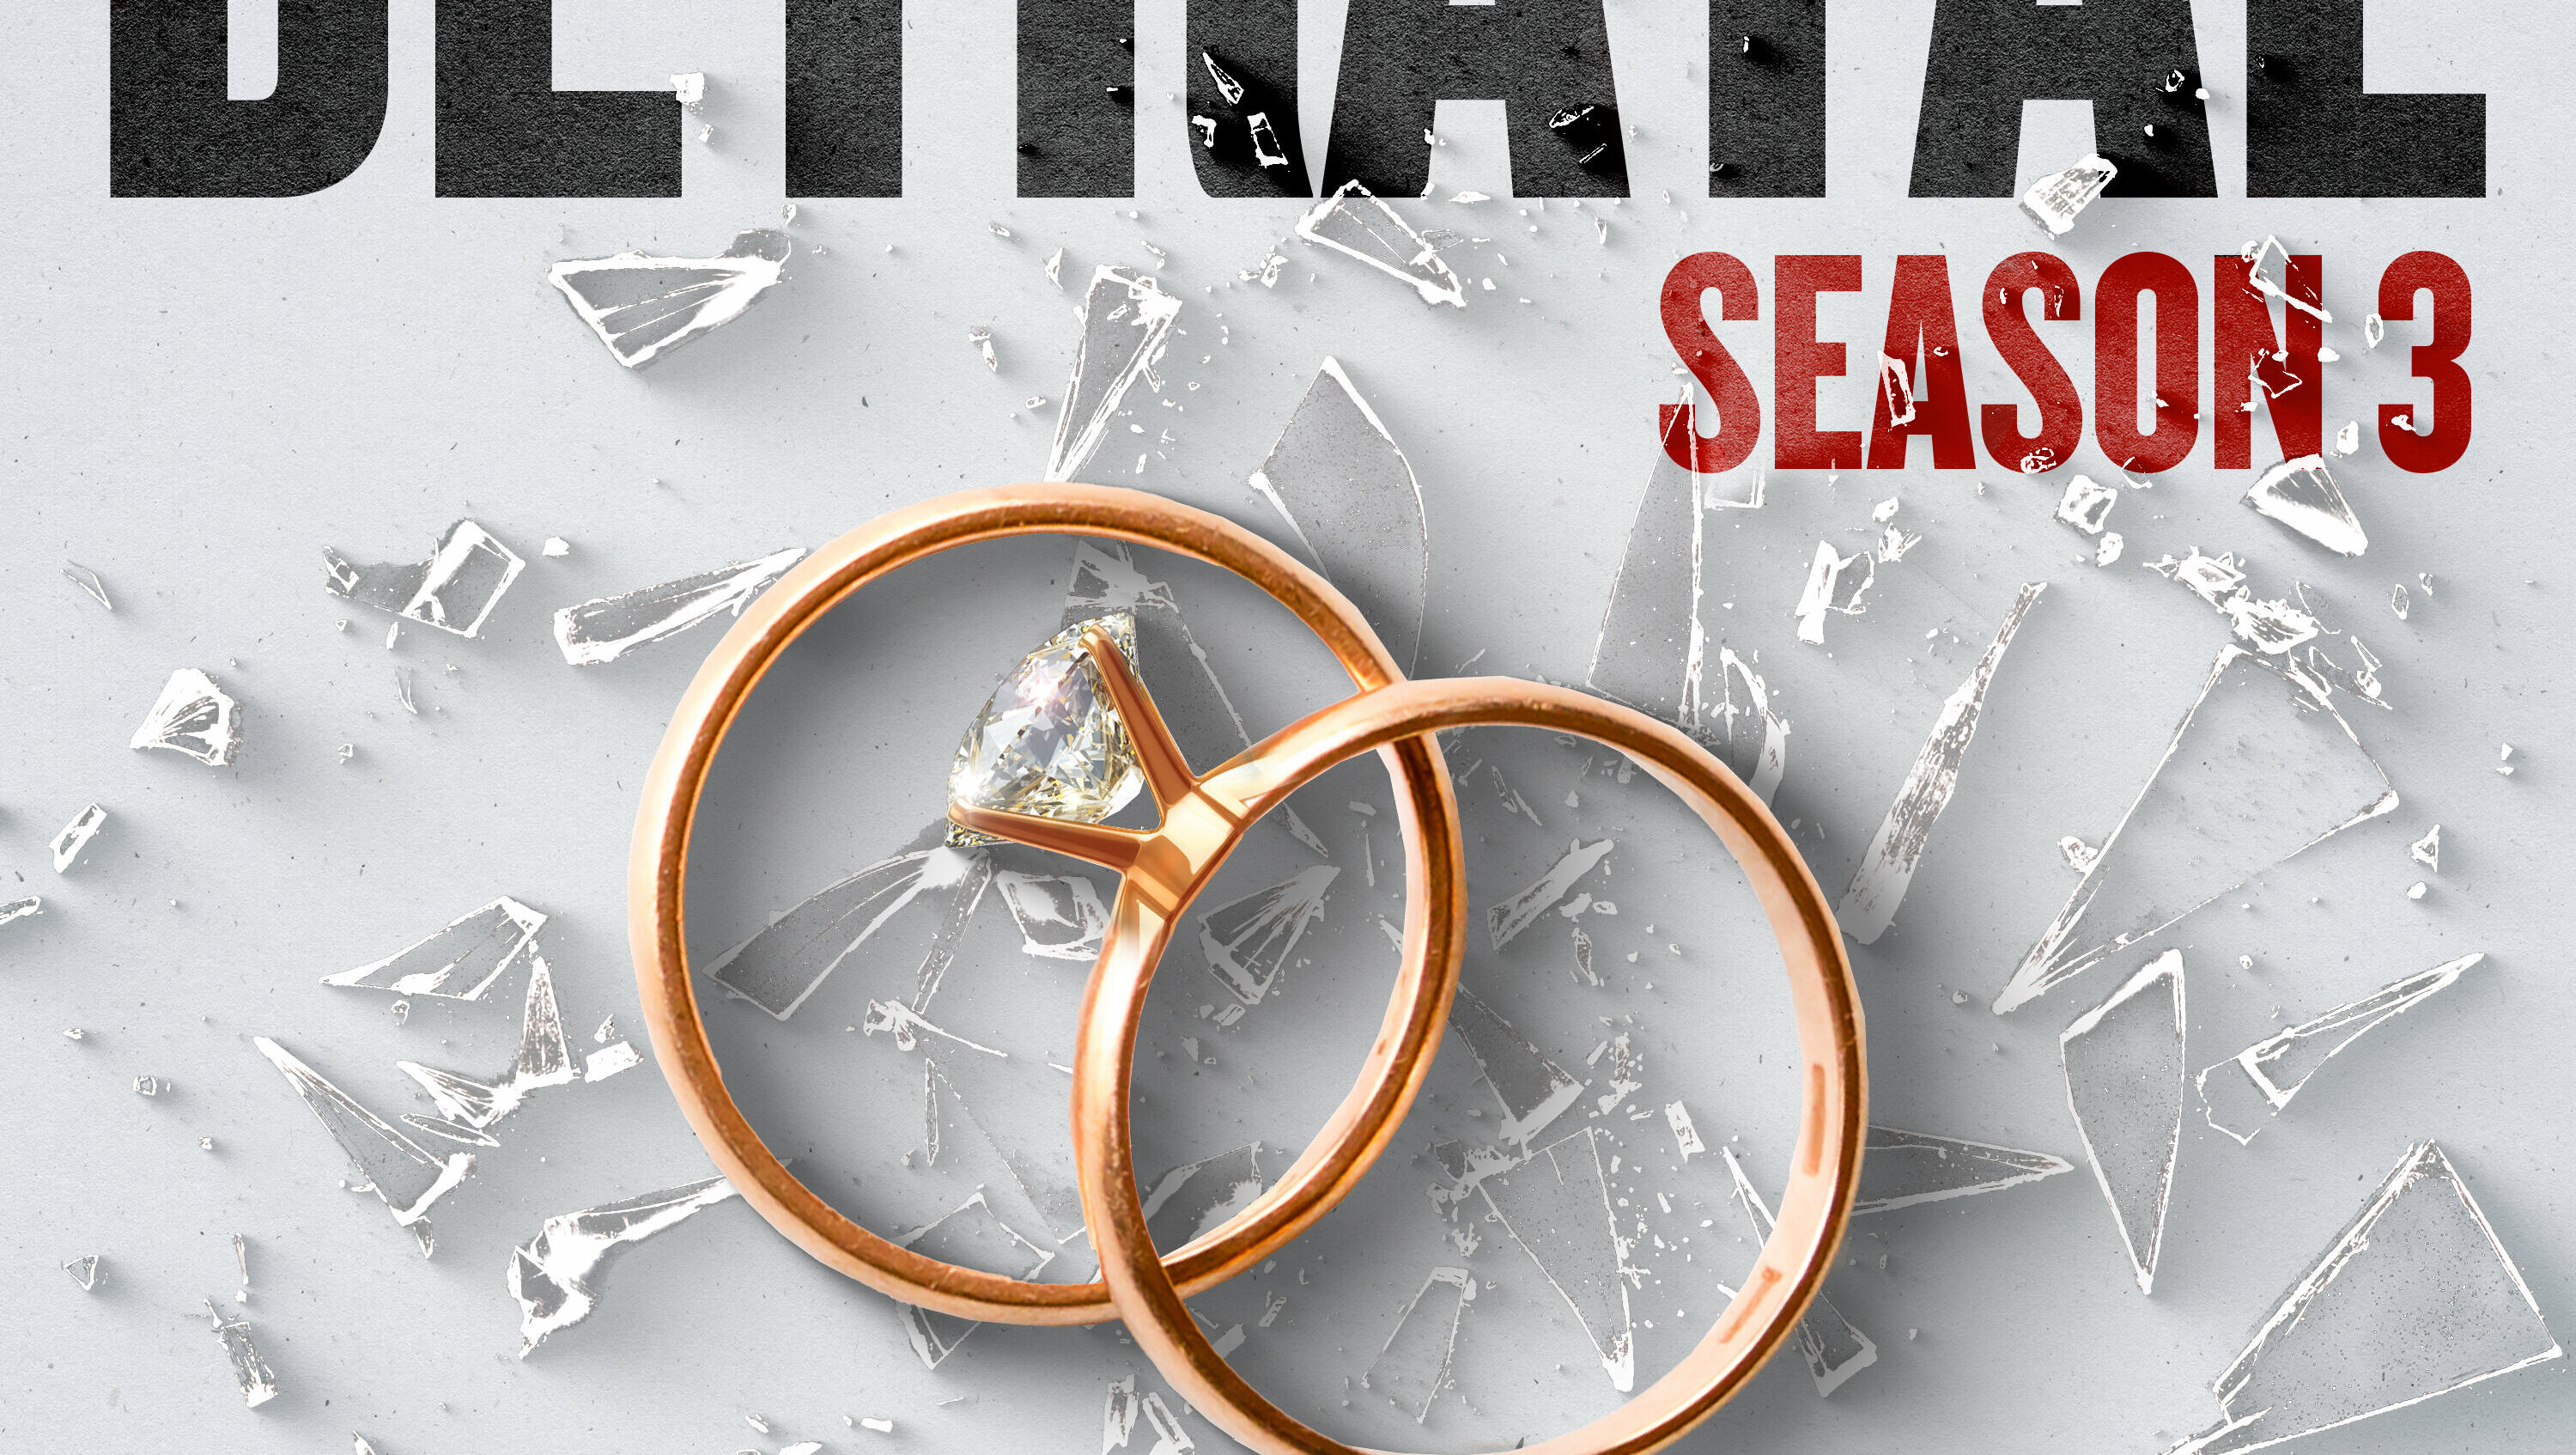 Introducing: Betrayal Season 3